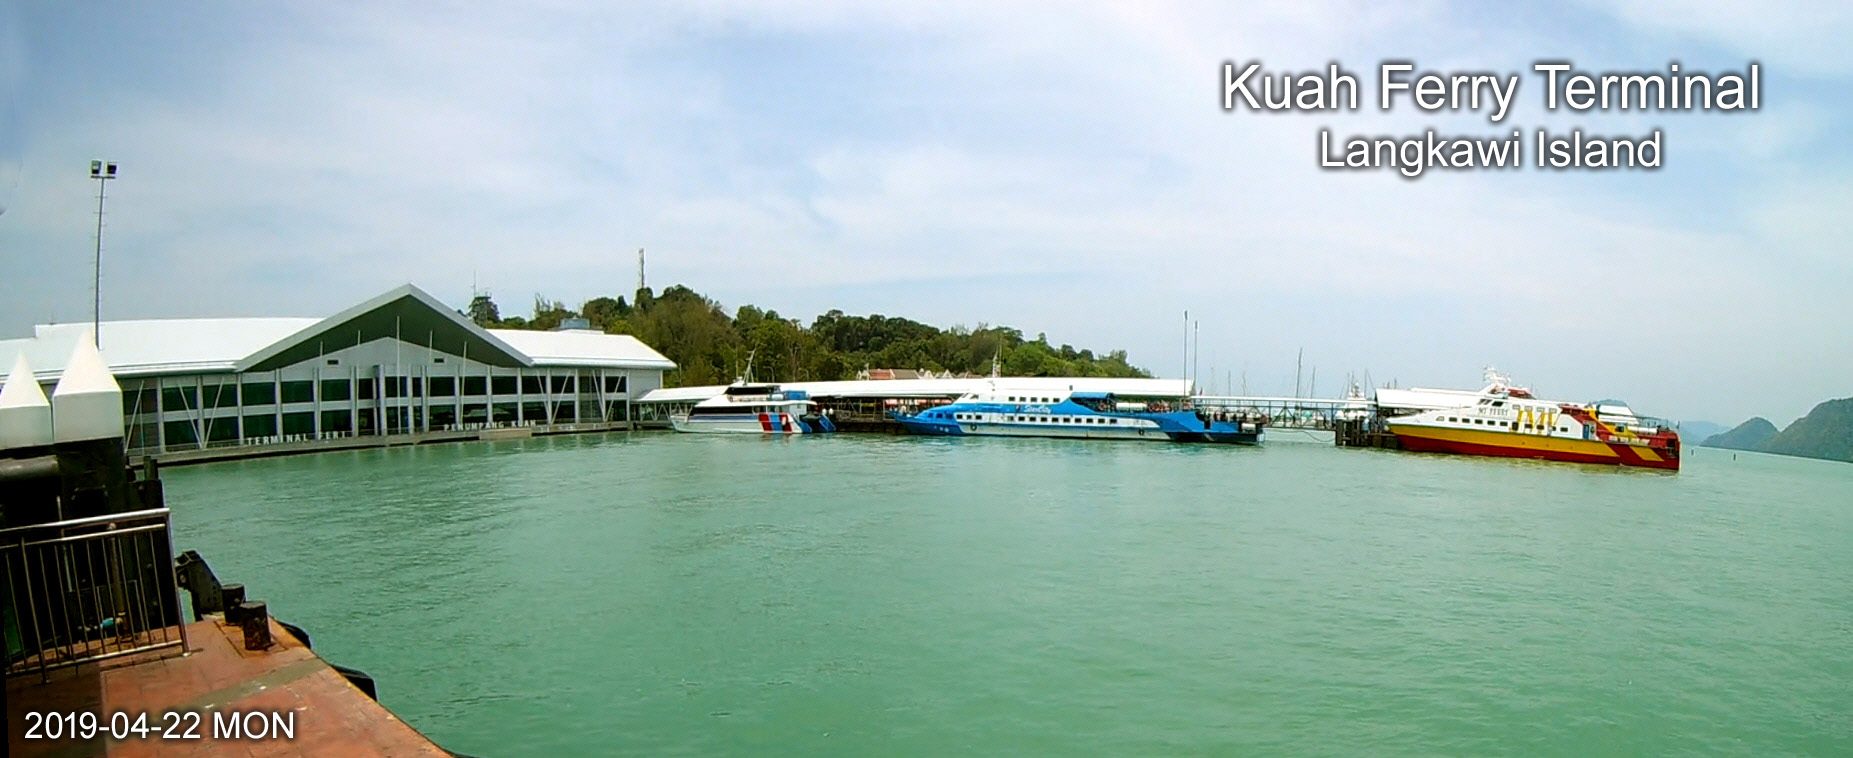 Kuah Ferry Terminal, Langkawi Island